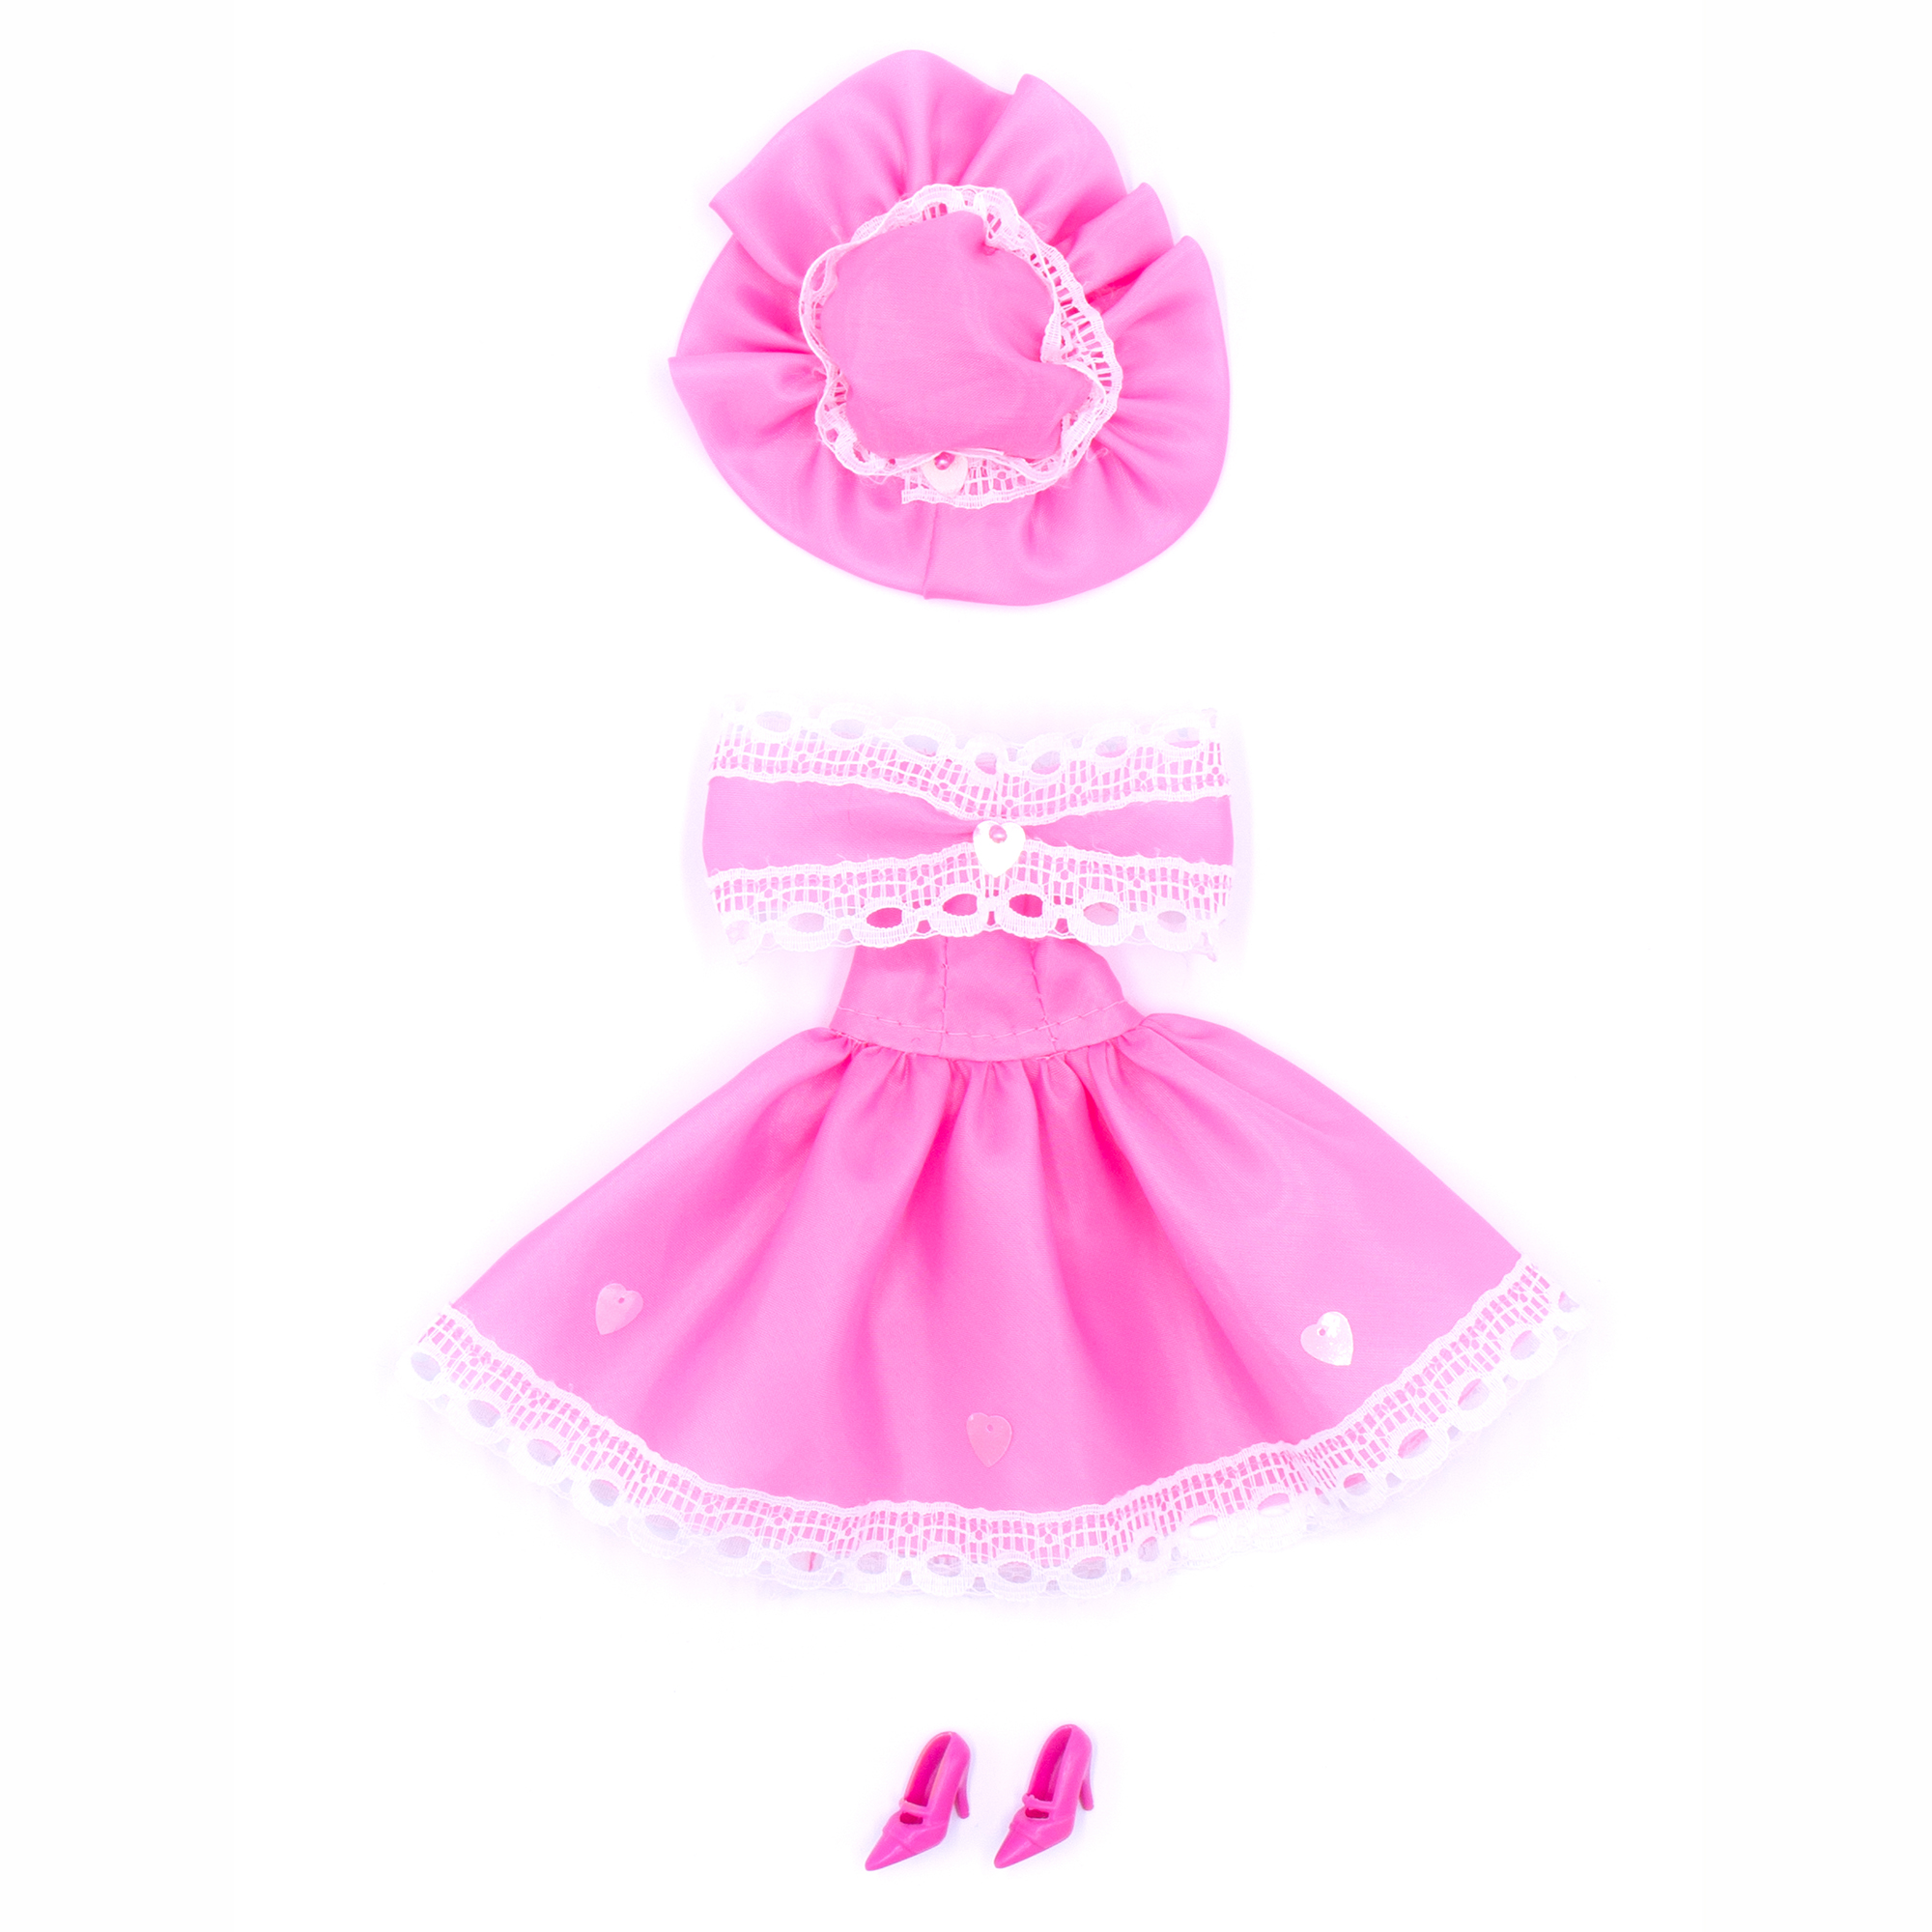 Легкое платье из шелка Модница для куклы 29 см 1401 розовый 1401розовый - фото 2